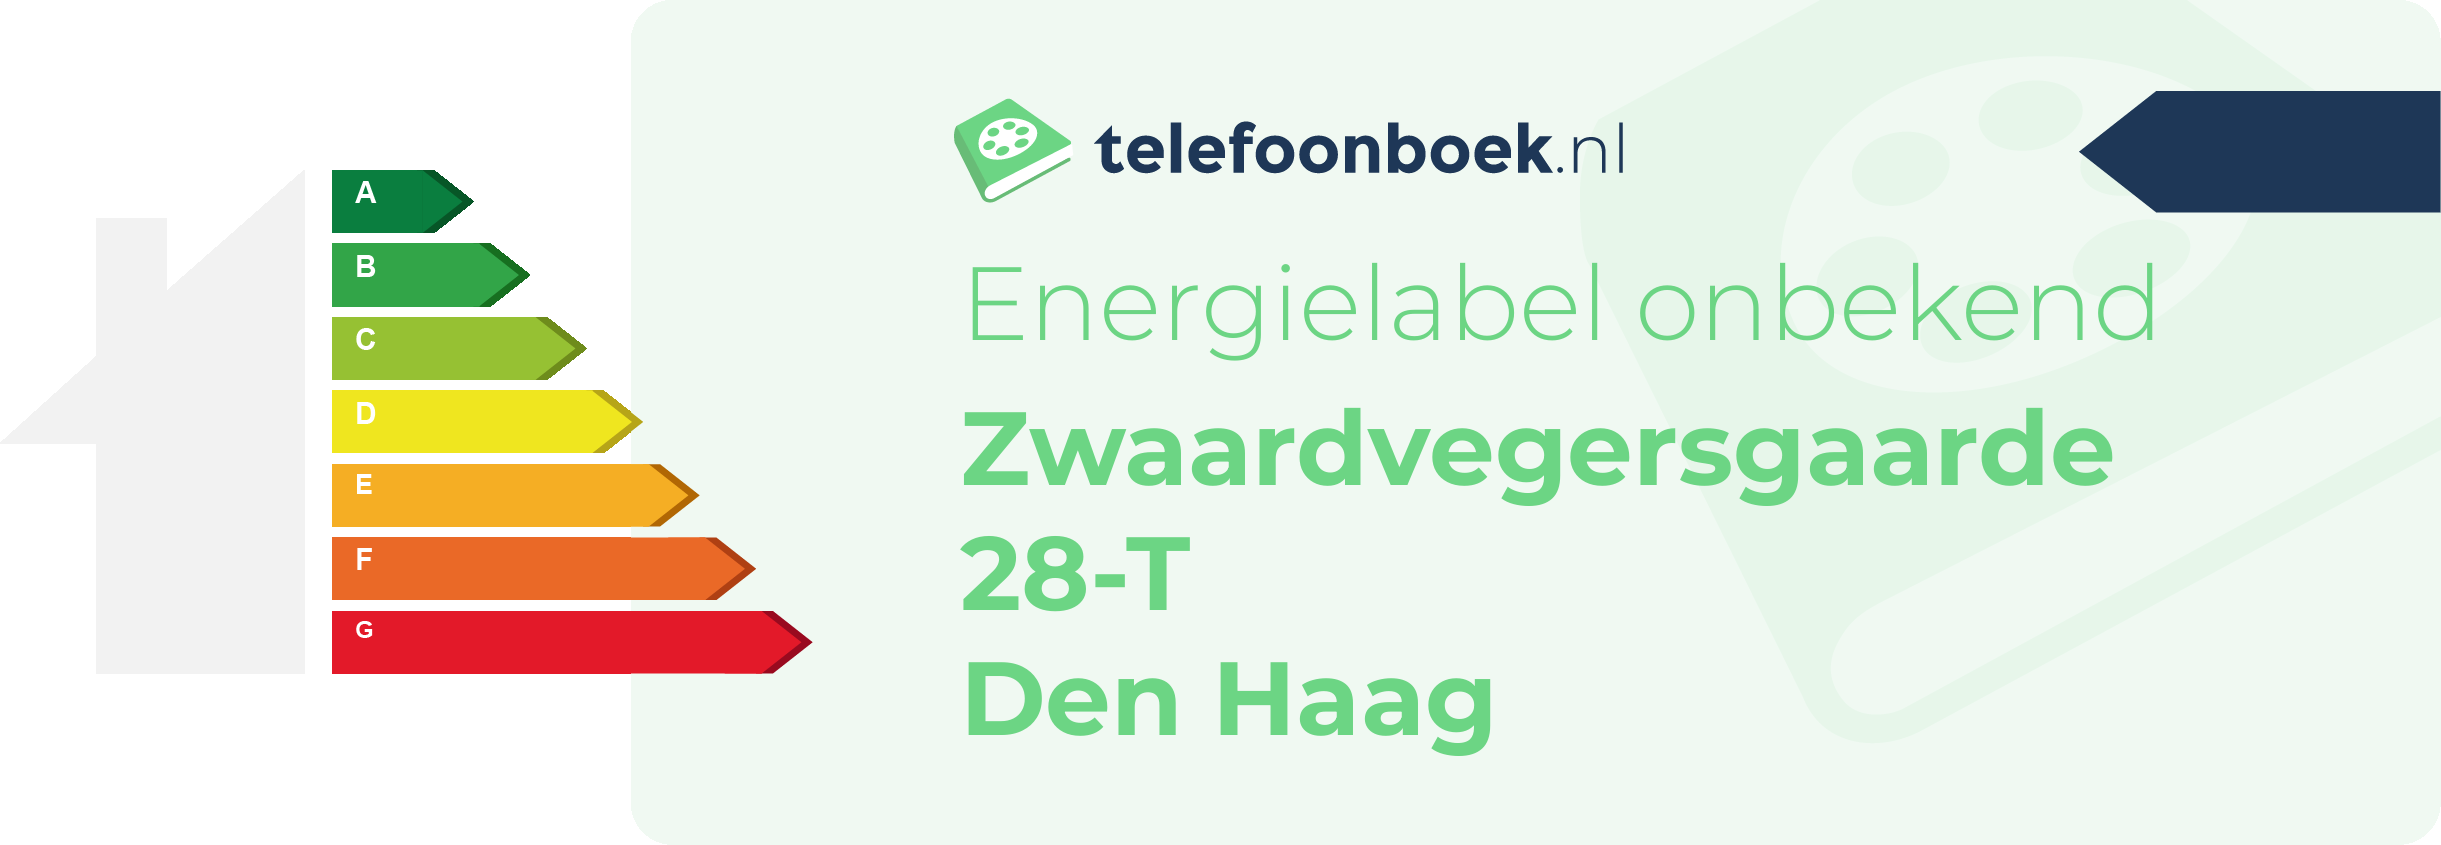 Energielabel Zwaardvegersgaarde 28-T Den Haag